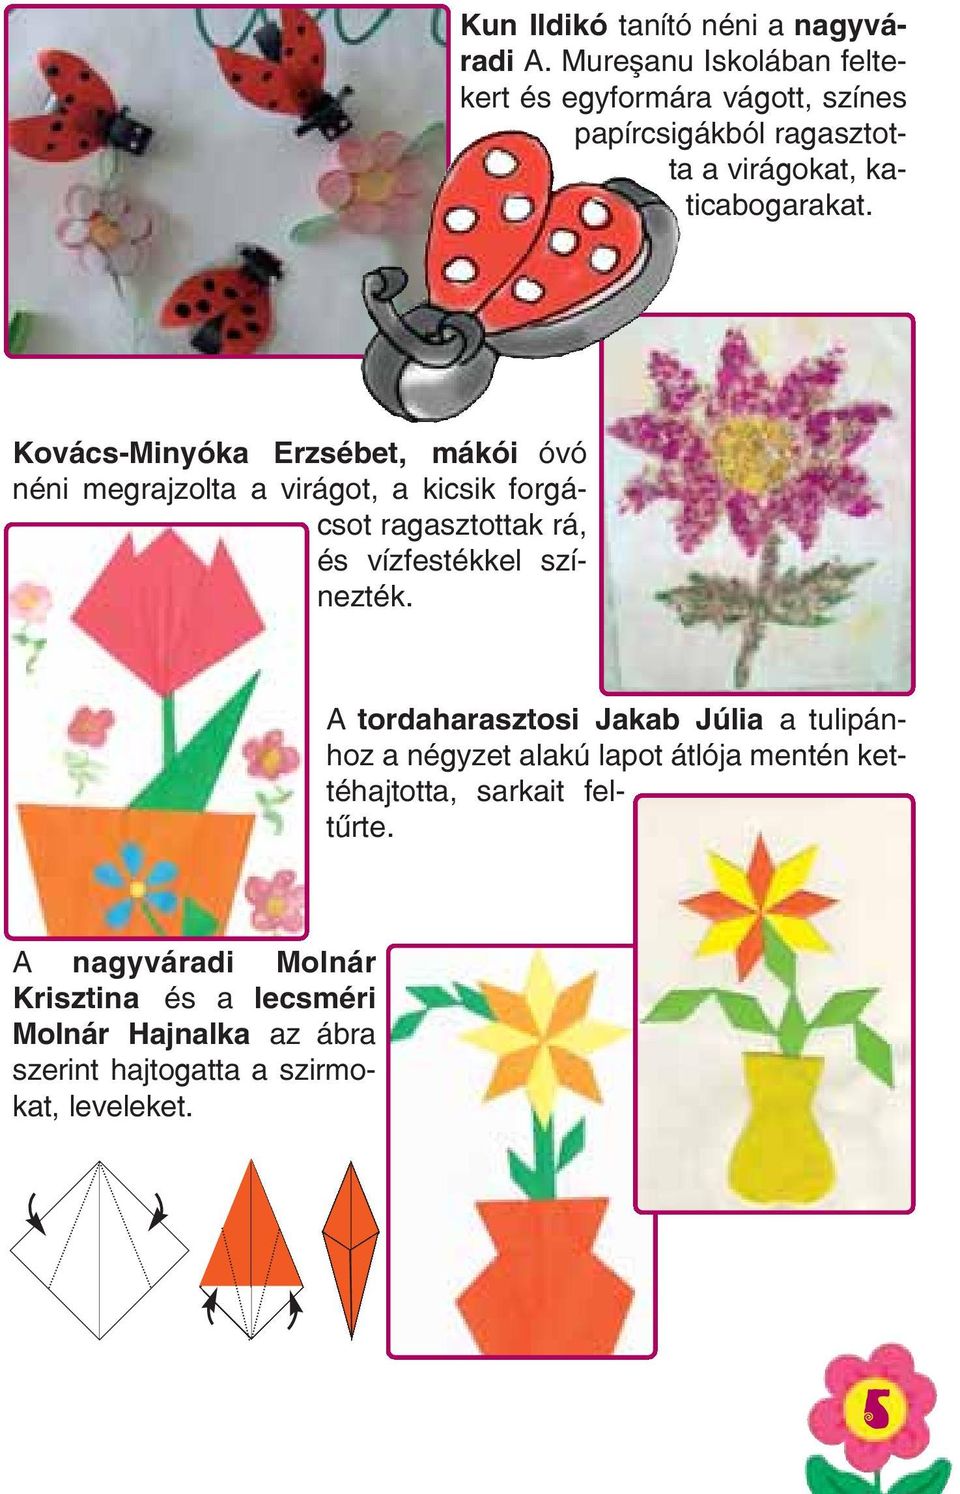 Kovács-Minyóka Erzsébet, mákói óvó néni megrajzolta a virágot, a kicsik forgácsot ragasztottak rá, és vízfestékkel színezték.